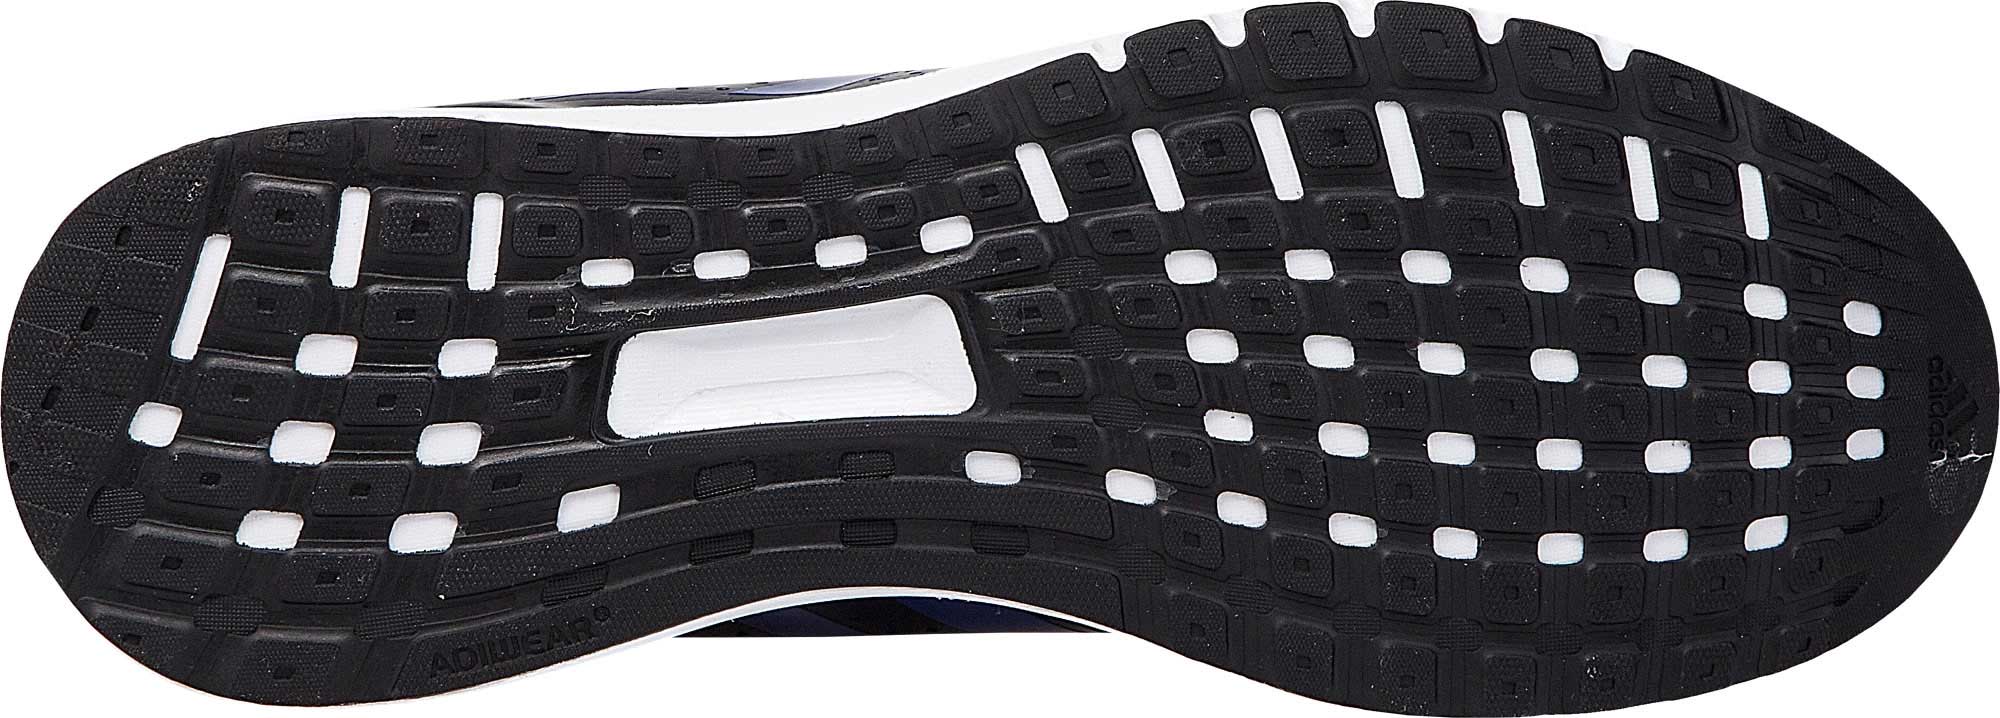 DURAMO ELITE 2M - Men's Running Shoes